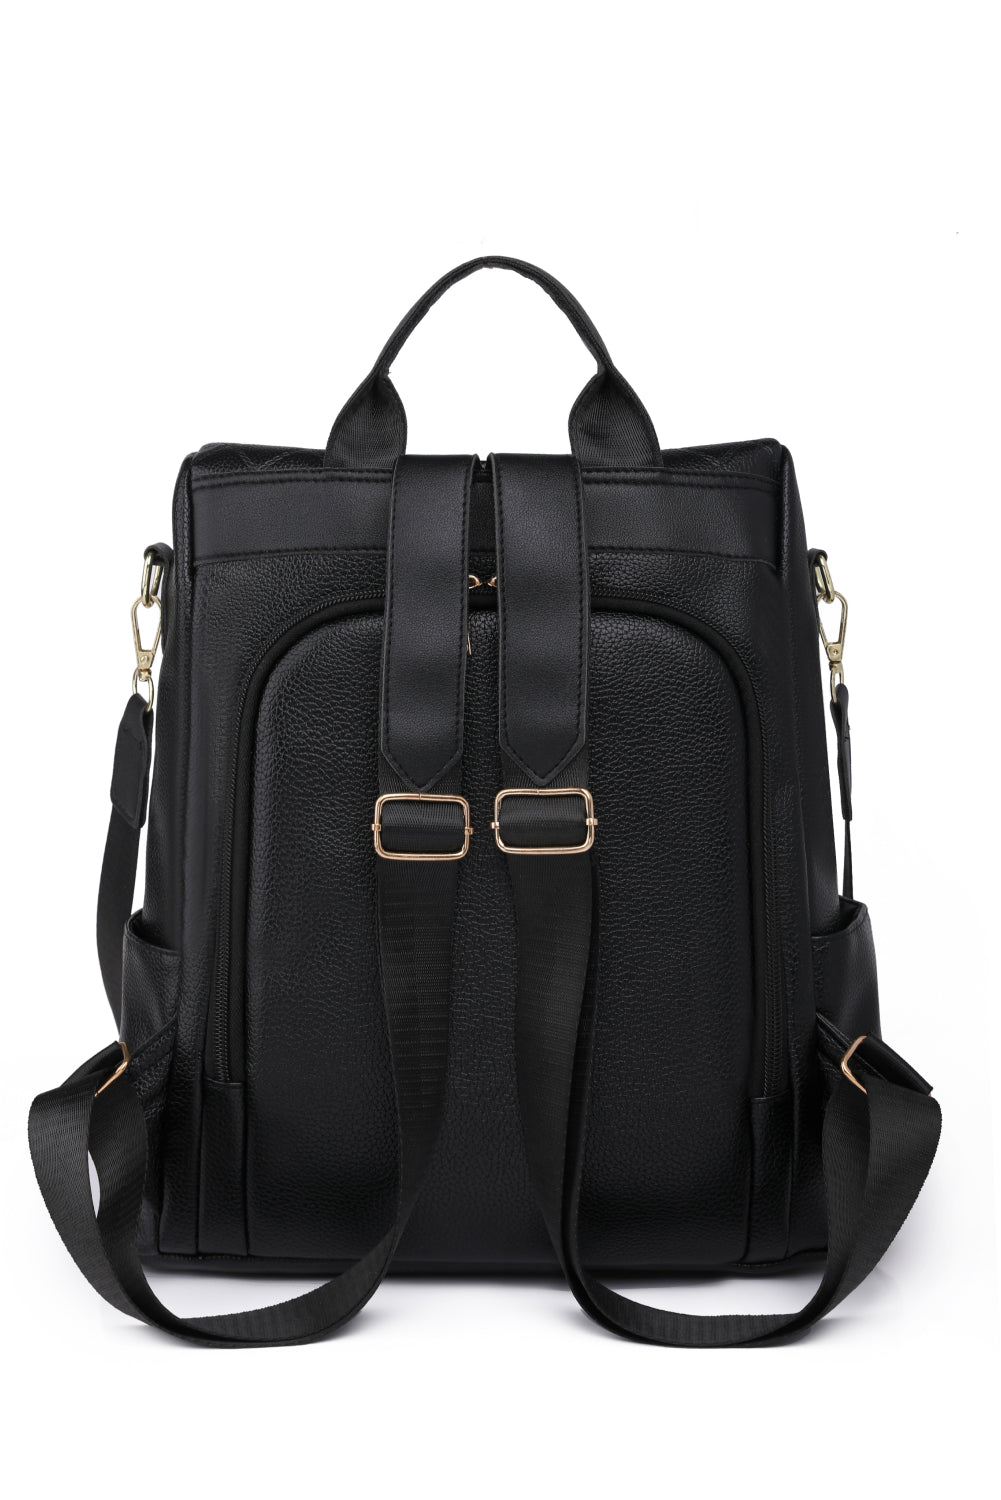 Pum-Pum Zipper Backpack - ONLINE EXCLUSIVE